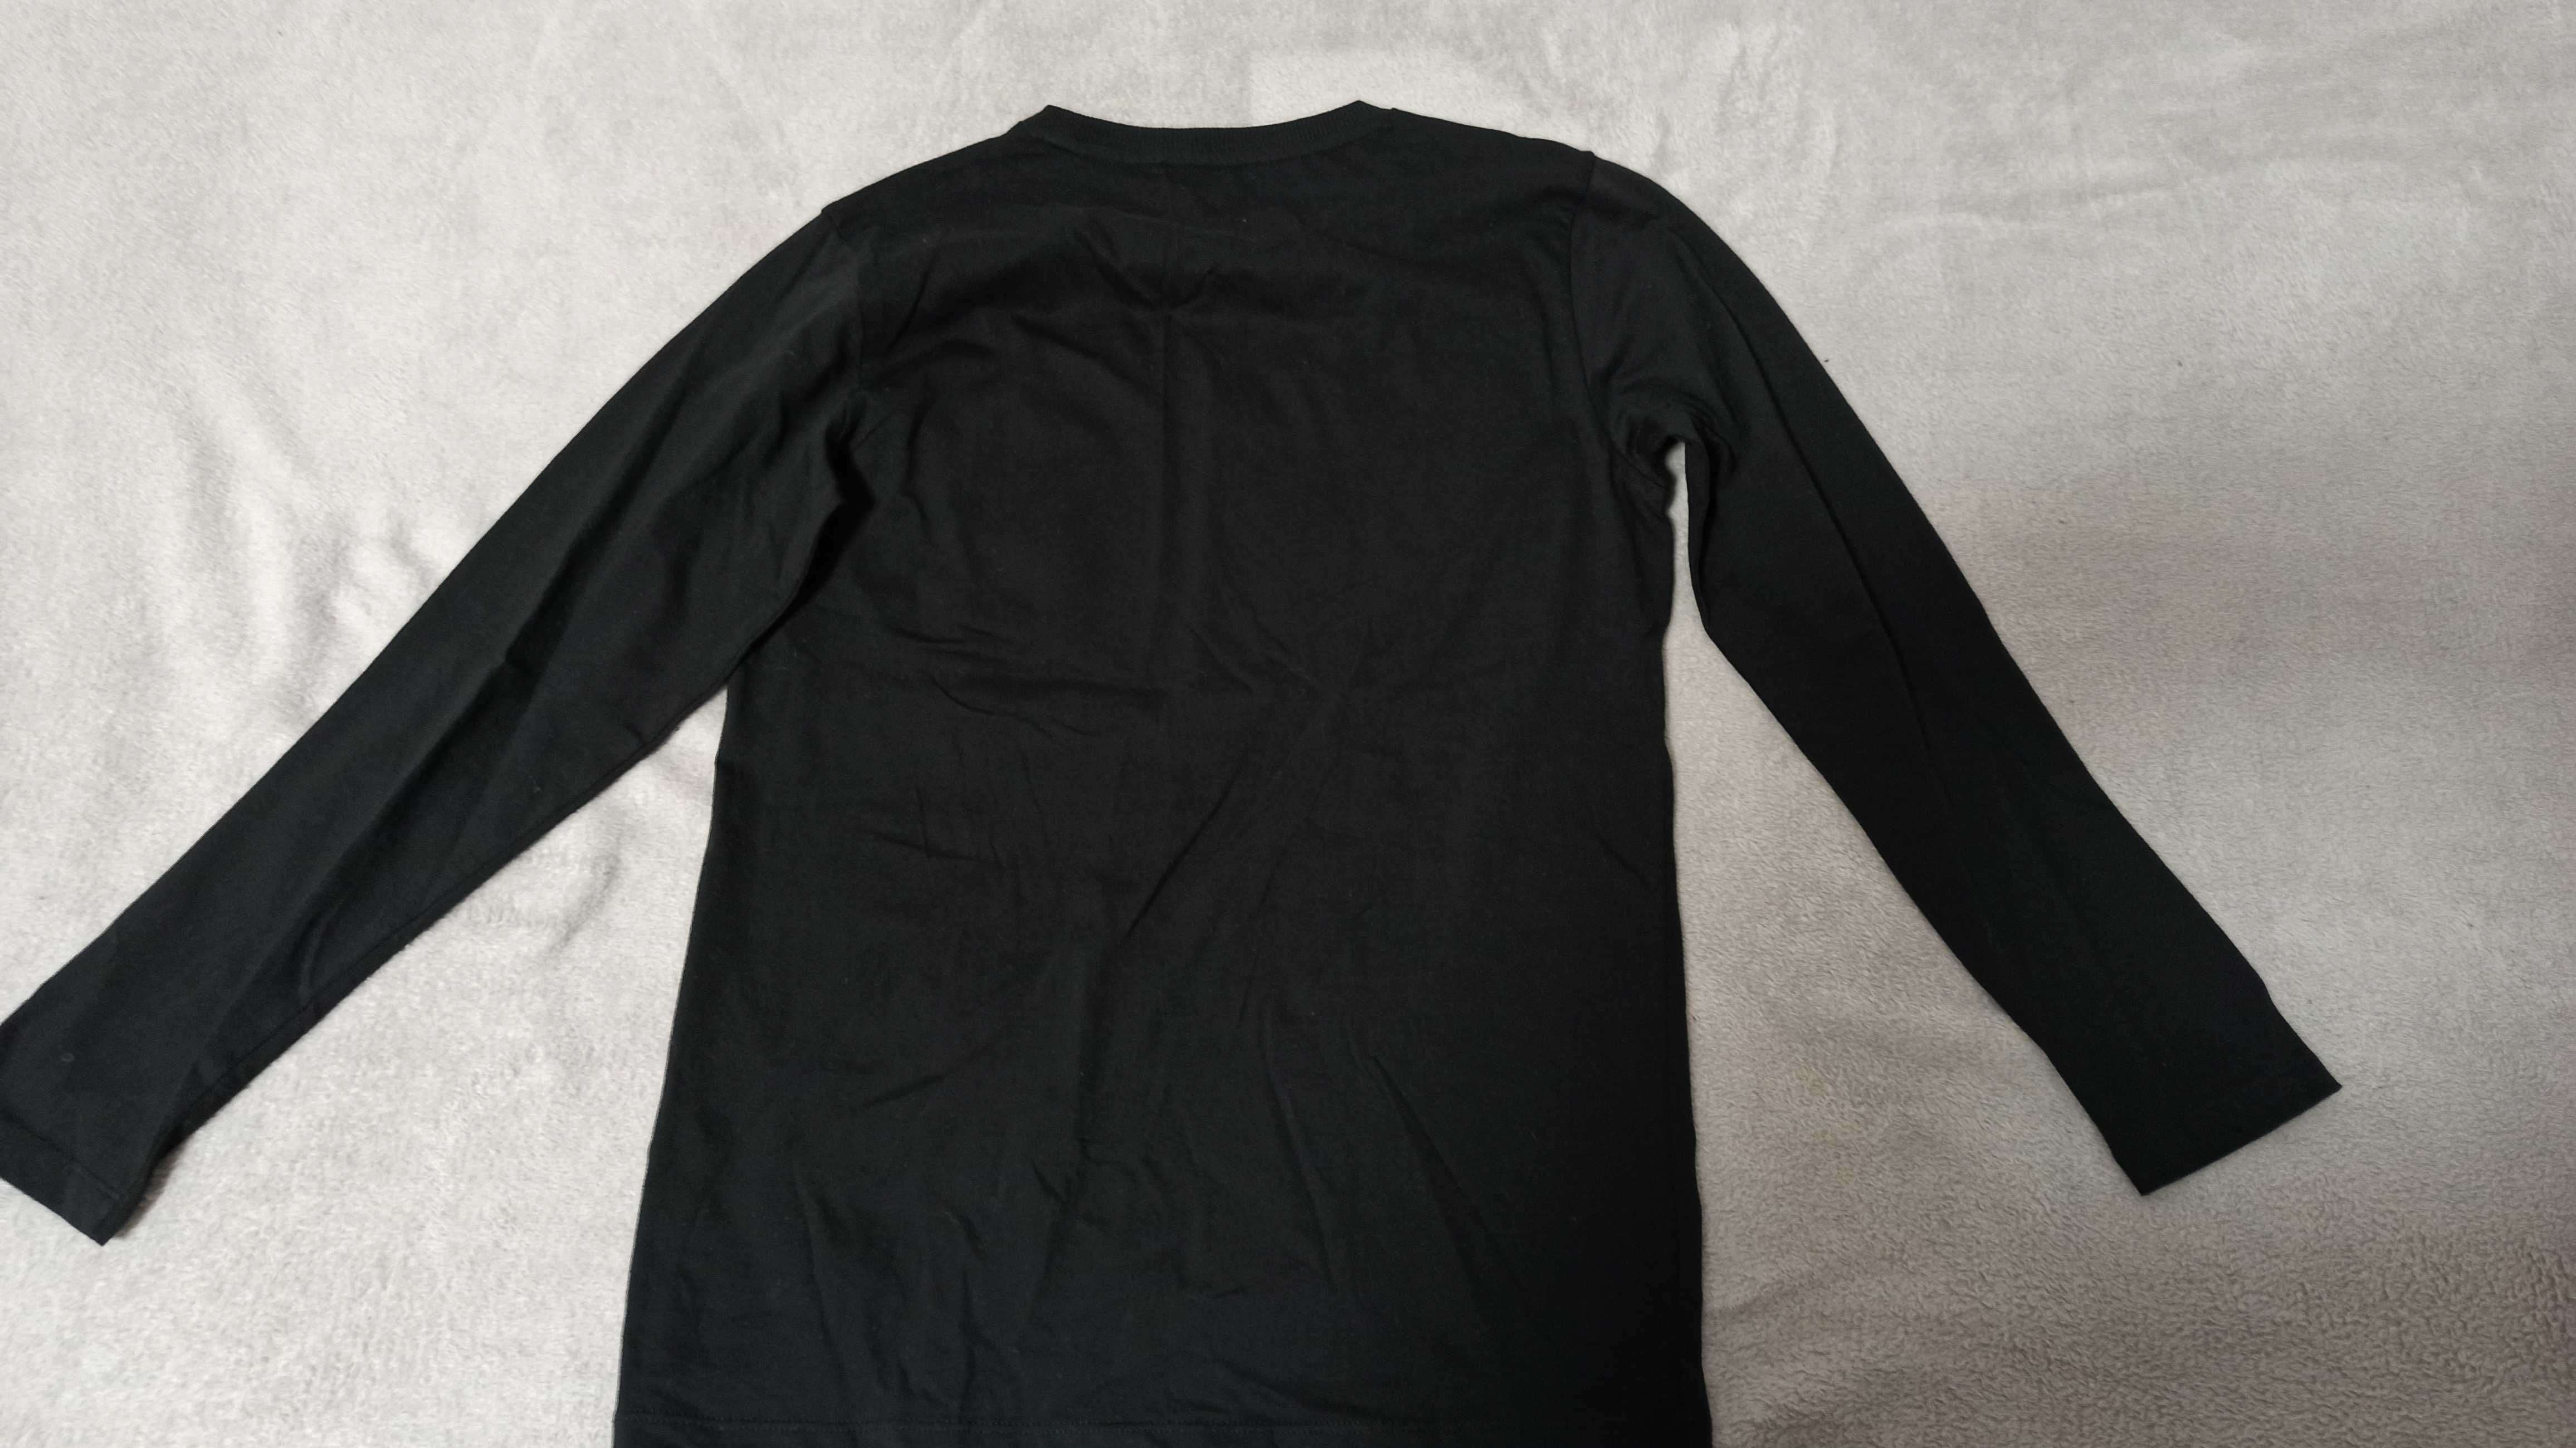 Czarna bluzka dla chłopca deskorolka rozmiar 158 (nowa)